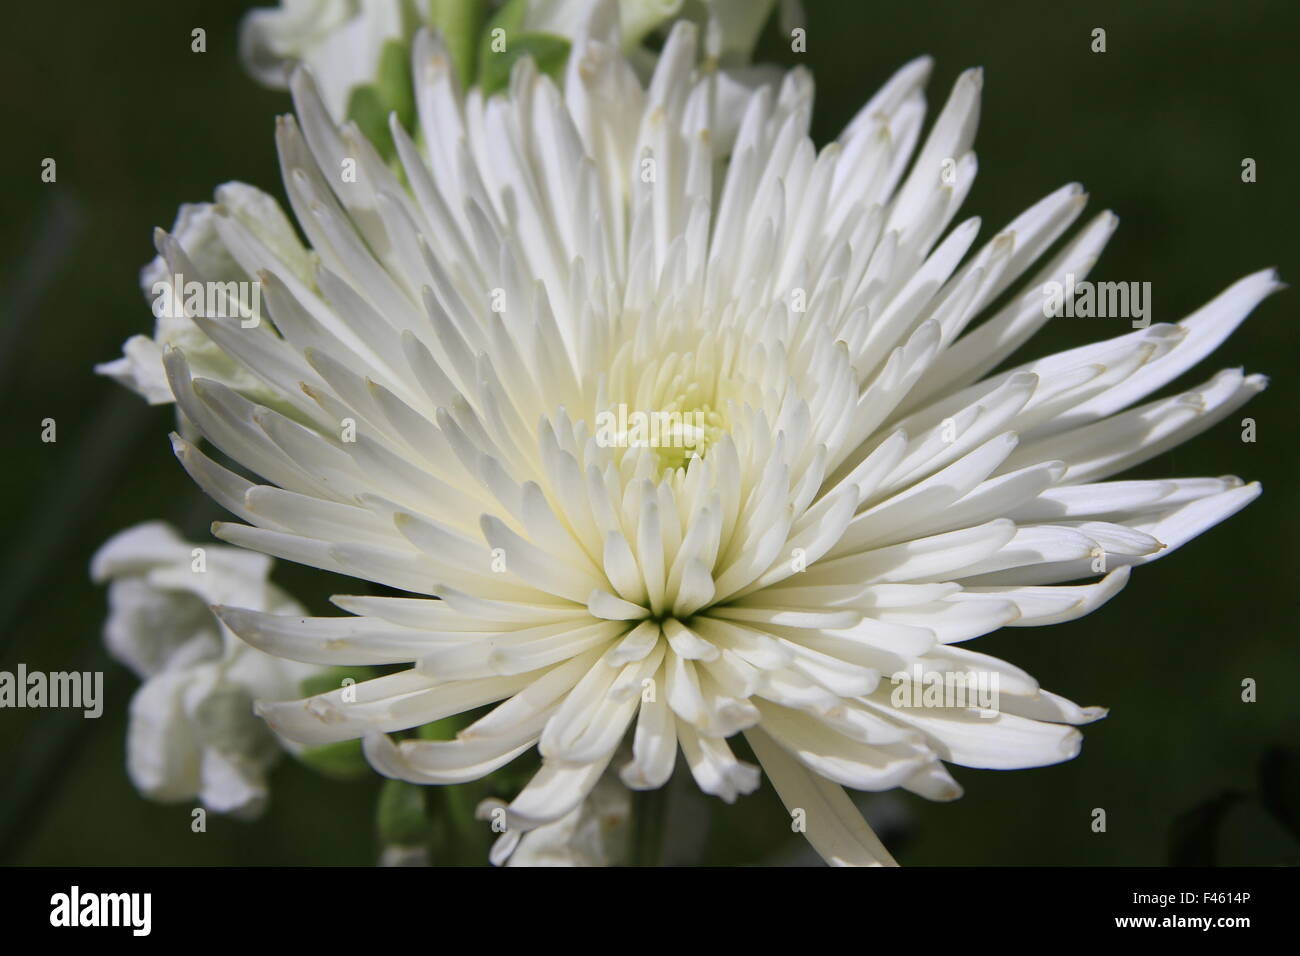 Beautiful white spider mum flower macro photography Stock Photo